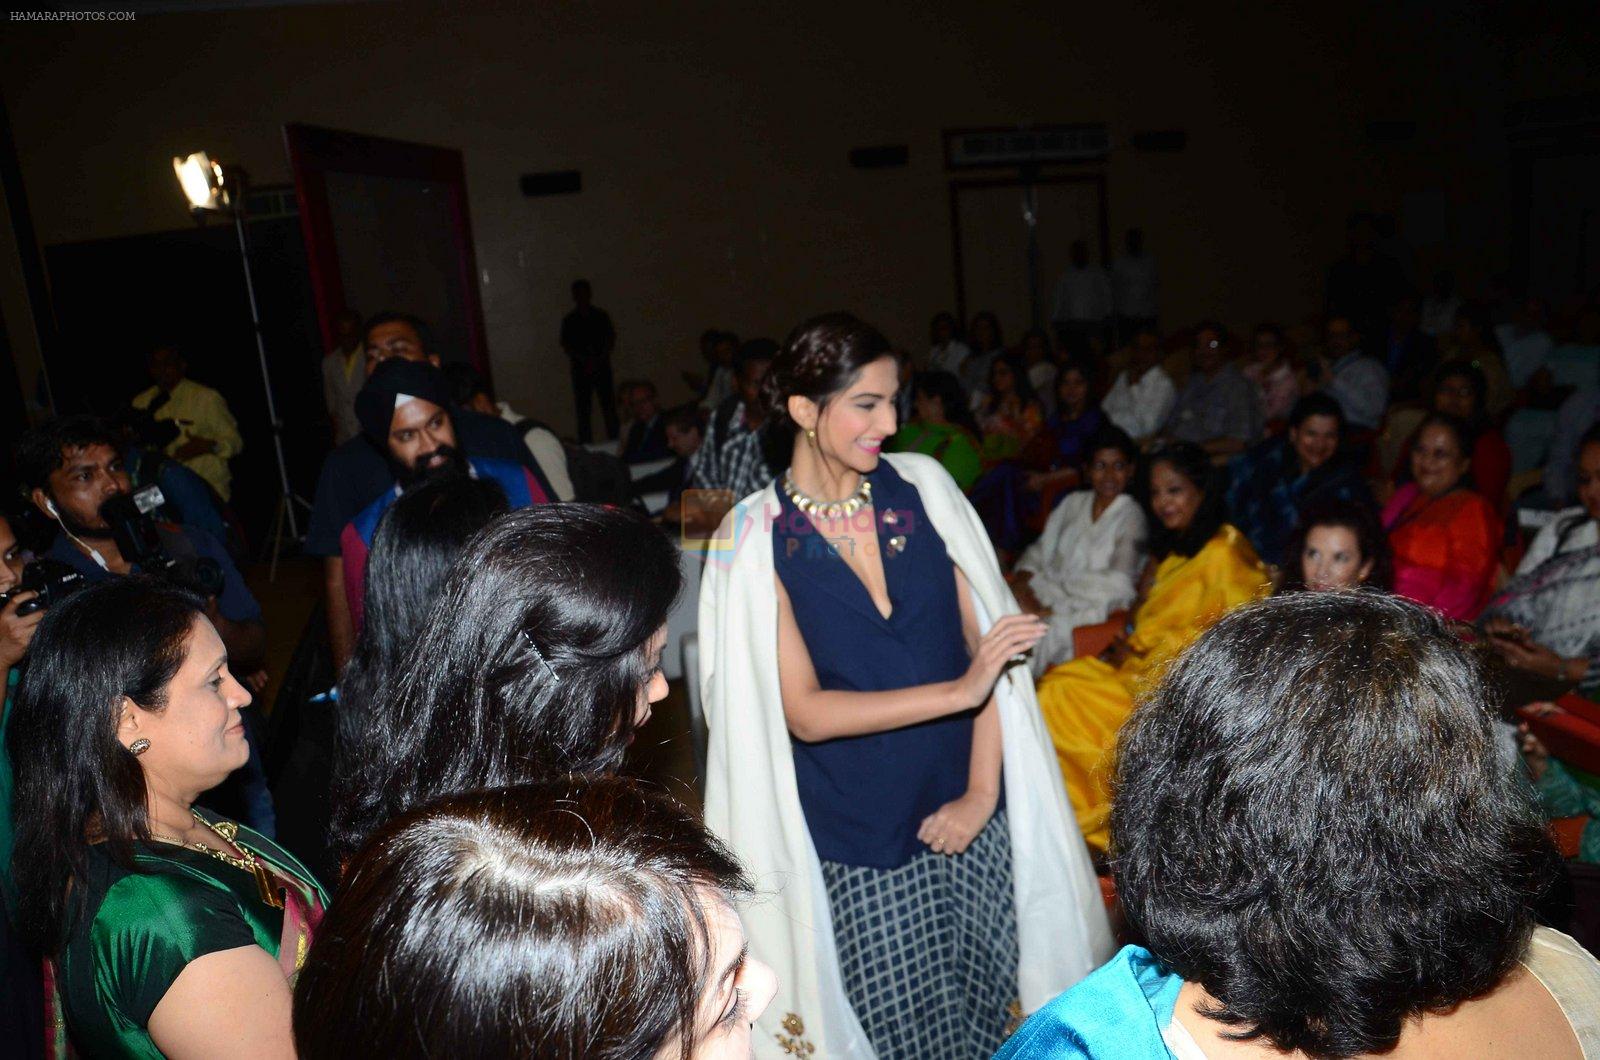 Sonam Kapoor at FICCI on 18th Feb 2016